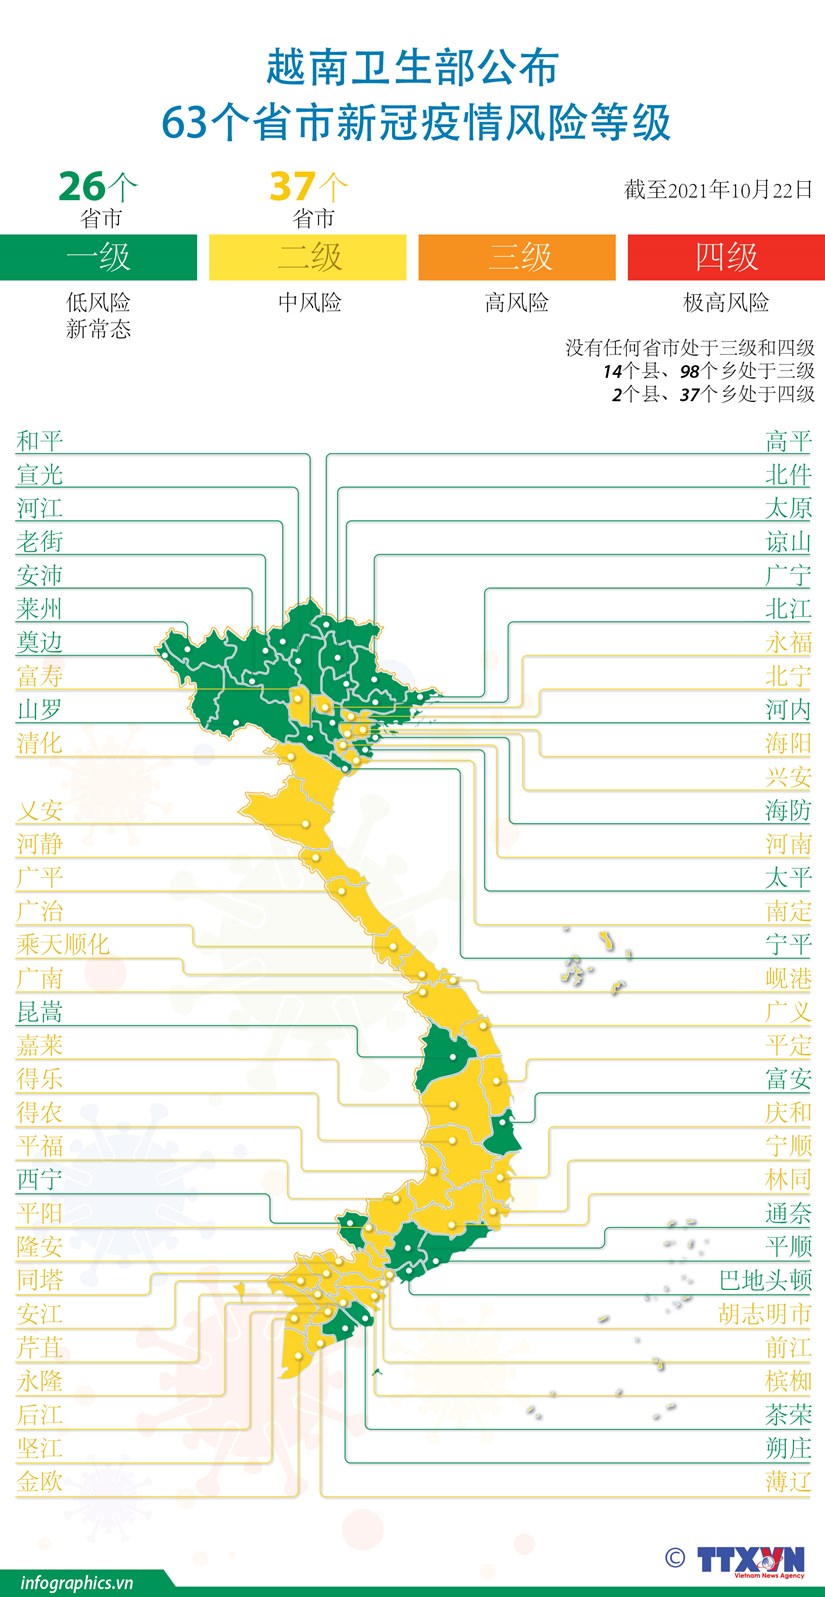 图表新闻：越南卫生部公布63个省市新冠疫情风险等级 hinh anh 1